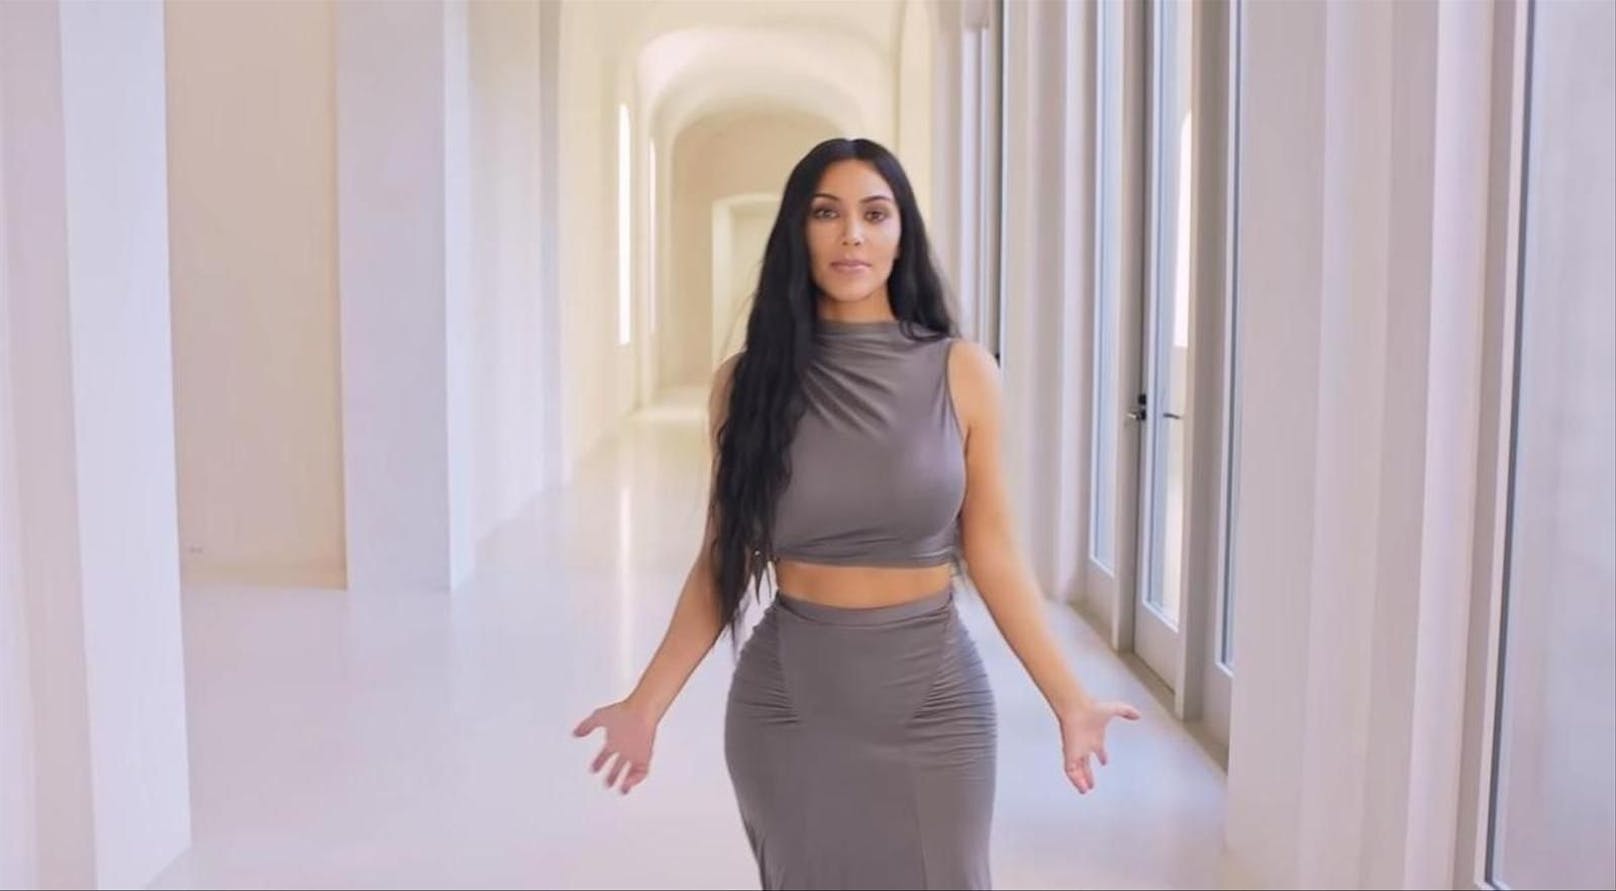 Kim Kardashian und Kanye West hatten lange eine eiserne Regel: Das gemeinsame Zuhause darf nicht auf Social Media gezeigt werden. Doch dann brach erst Kanye die Abmachung, als er ein Bild des Hausflurs twitterte, daraufhin lud Kim die "Vogue" zur Hausführung ein.